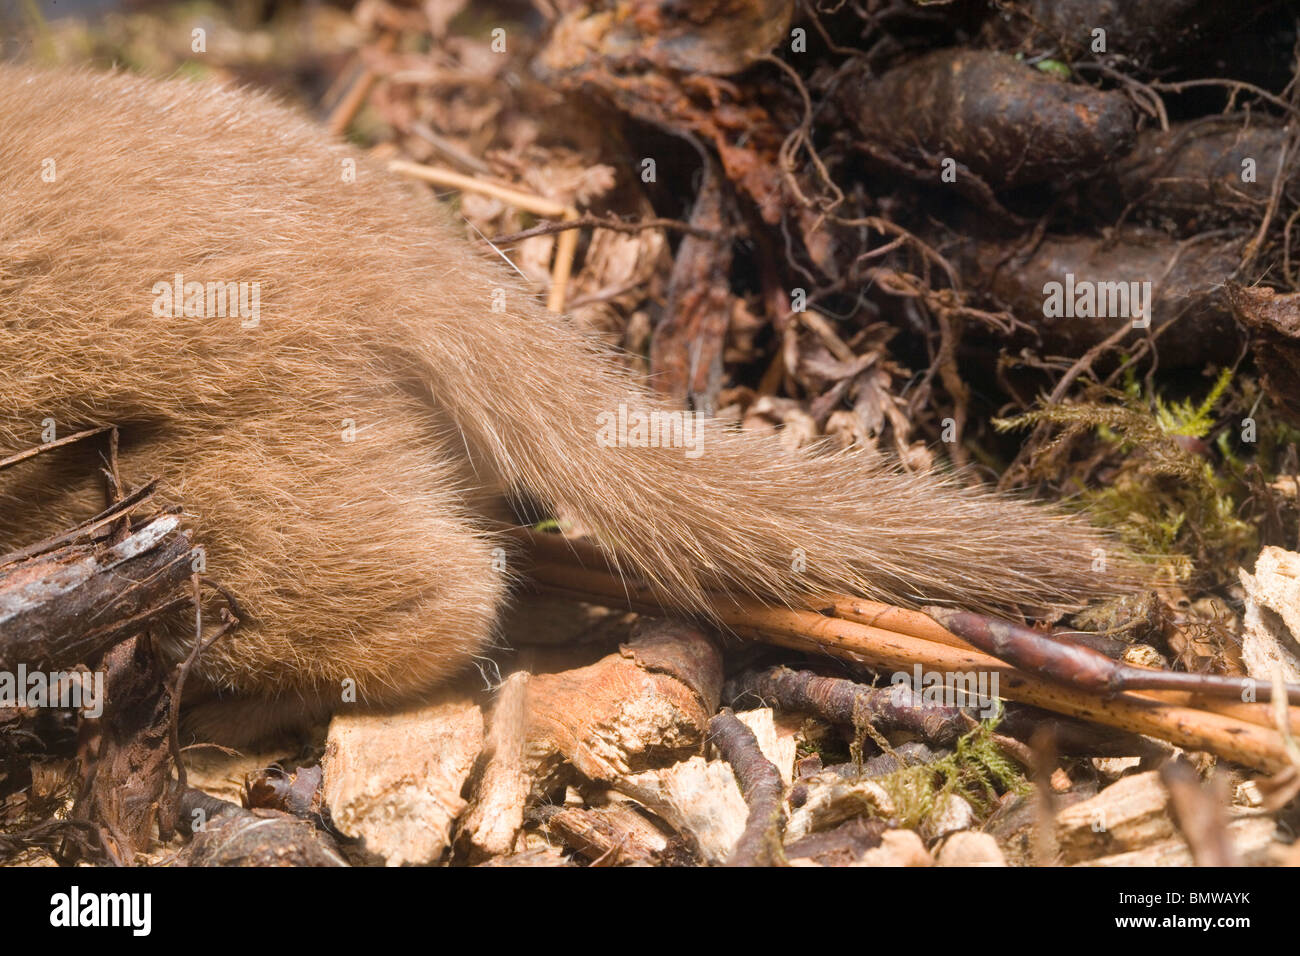 Wiesel (Mustela Nivalis).  Hintere Ende eines lebenden Tieres Schwanz zeigen. Vergleichen Sie mit einem Hermelin (Mustela Erminea). Stockfoto